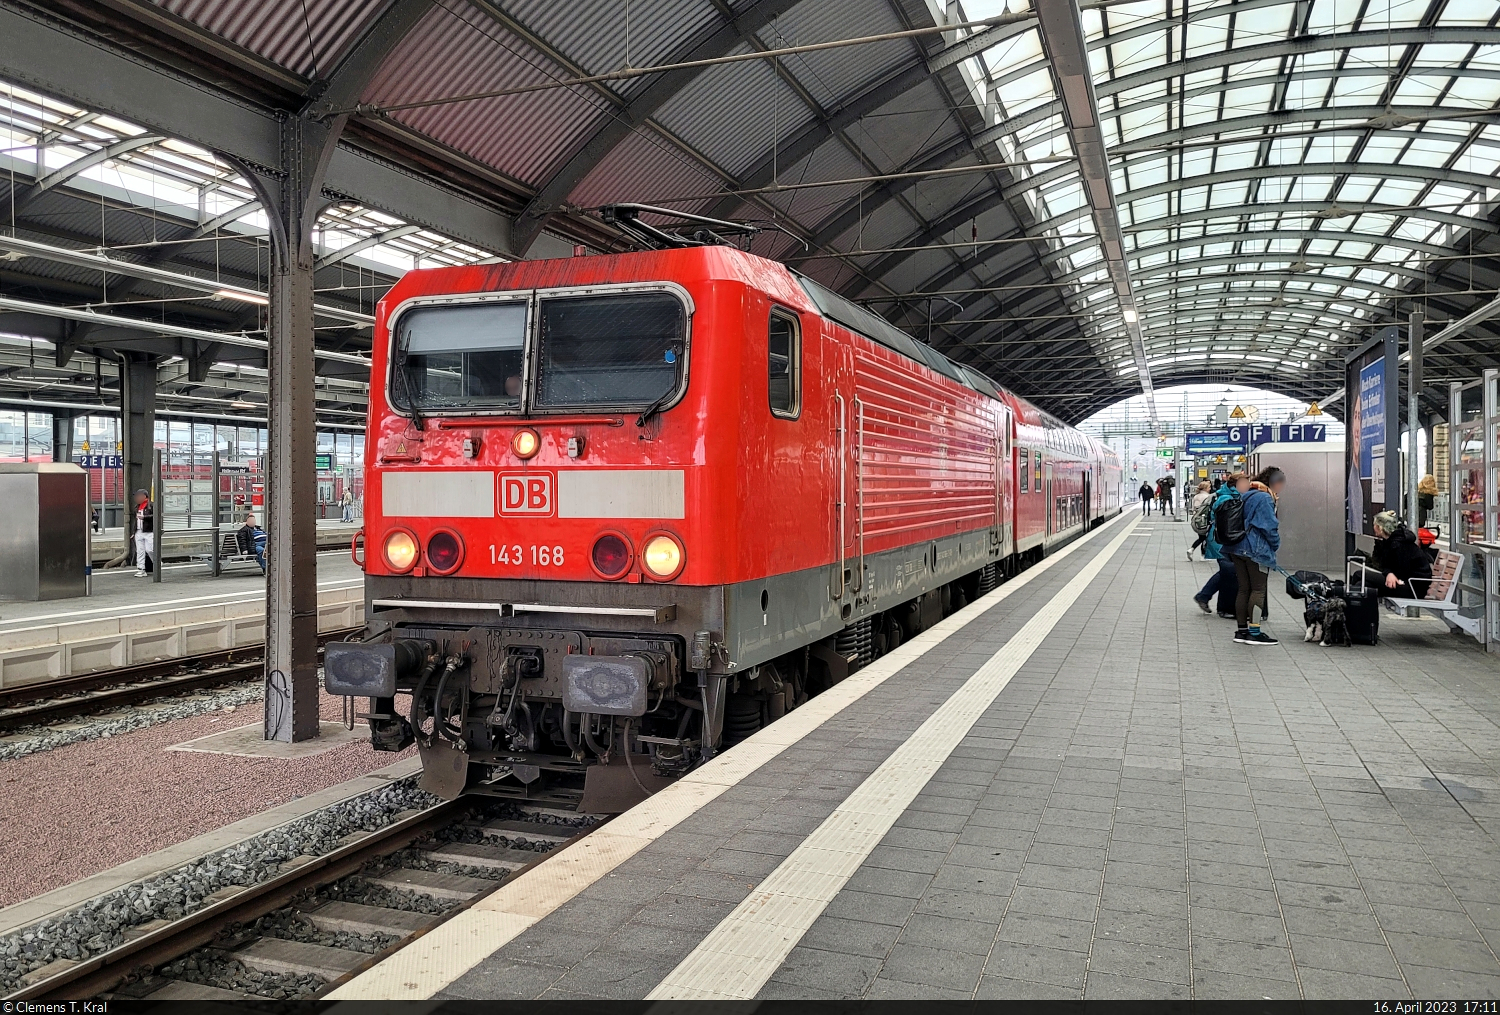 Statt einer 146.0 und nur mit zwei statt drei Dostos steht 143 168-3 in Halle(Saale)Hbf auf Gleis 6.

🧰 Elbe-Saale-Bahn (DB Regio Südost)
🚝 RE 4893  Saale-Express  (RE18) Halle(Saale)Hbf–Jena-Göschwitz [+5]
🕓 16.4.2023 | 17:11 Uhr